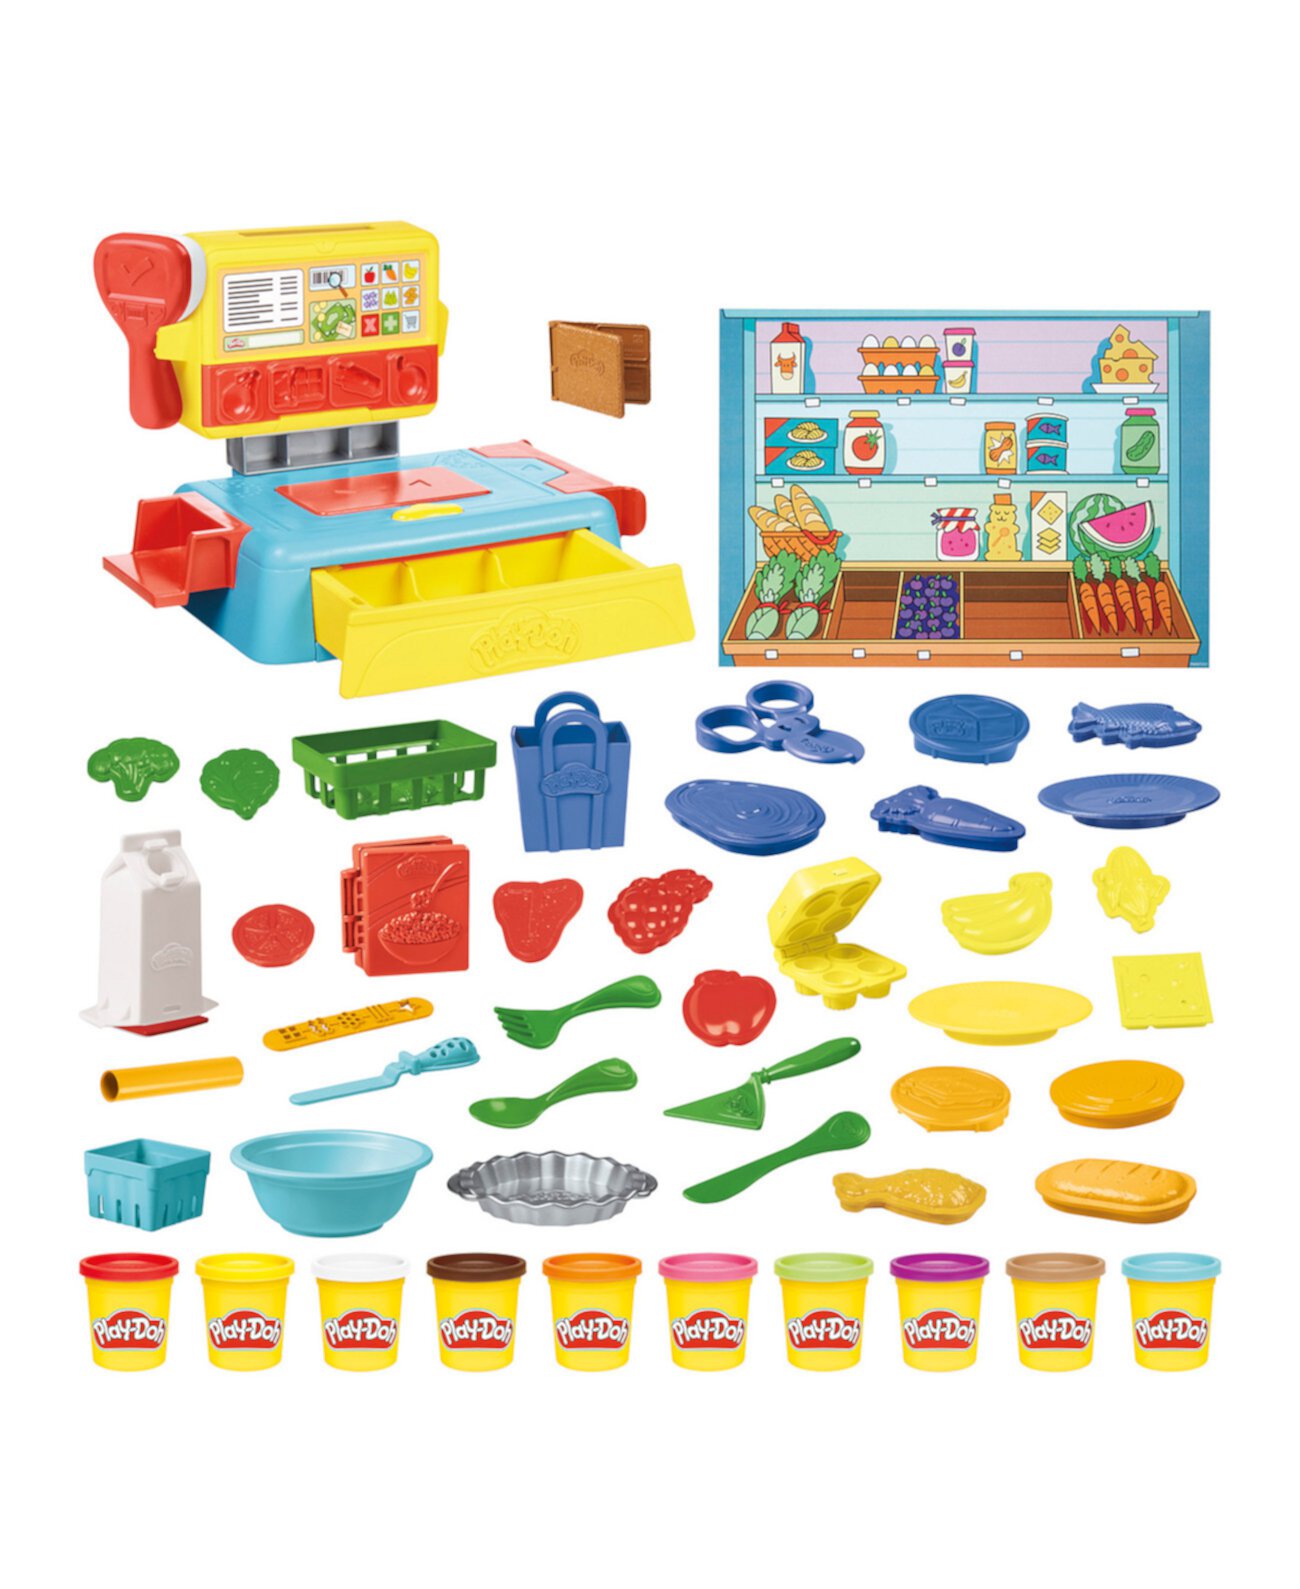 Игровой набор «Супермаркет Веселье» Play-Doh